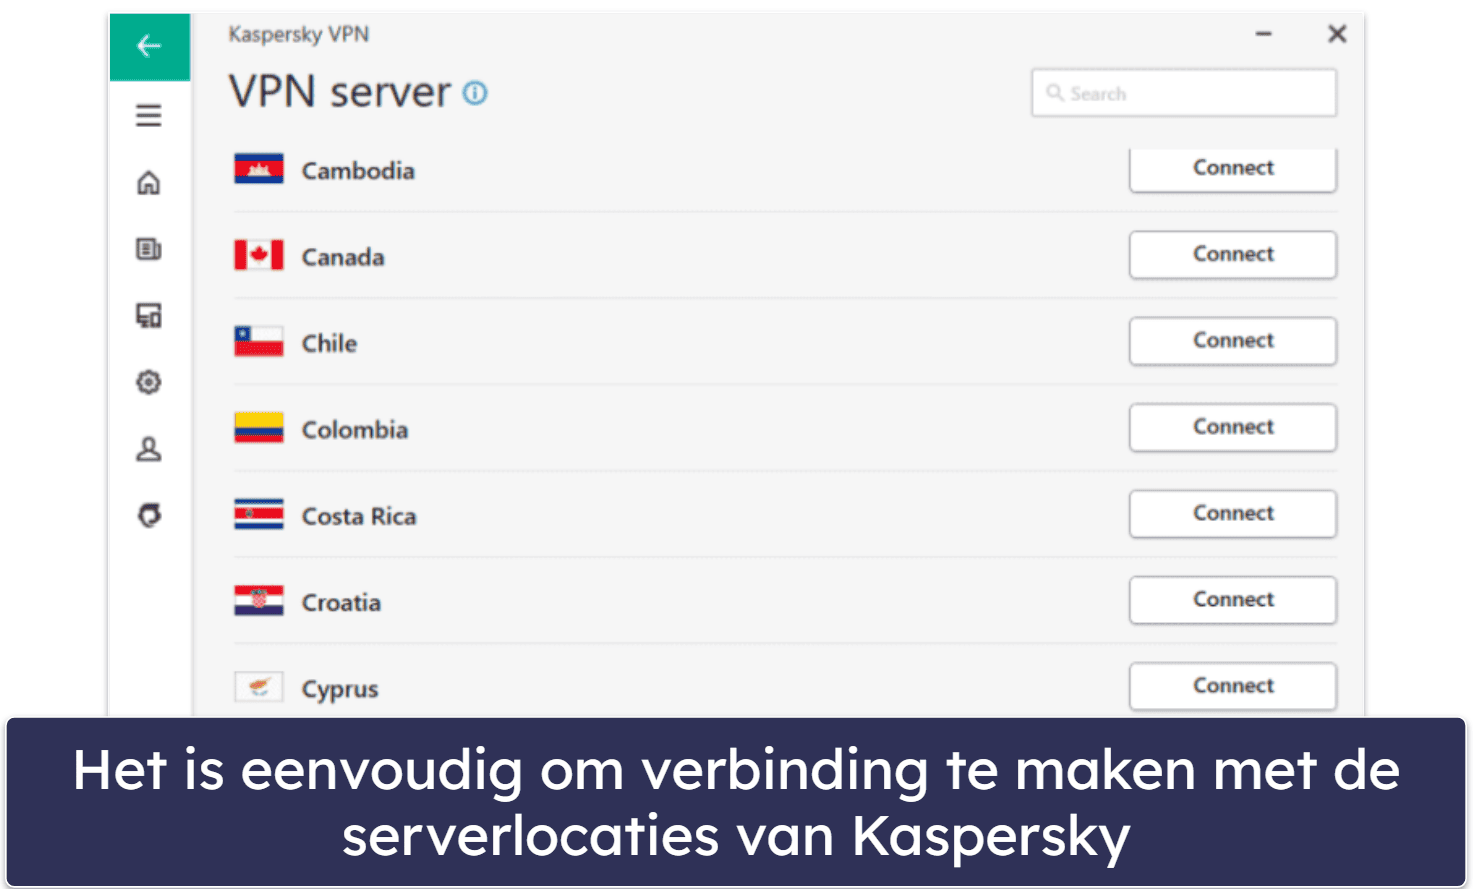 8. Kaspersky — antivirus met goed ouderlijk toezicht en een goede VPN voor het streamen van content